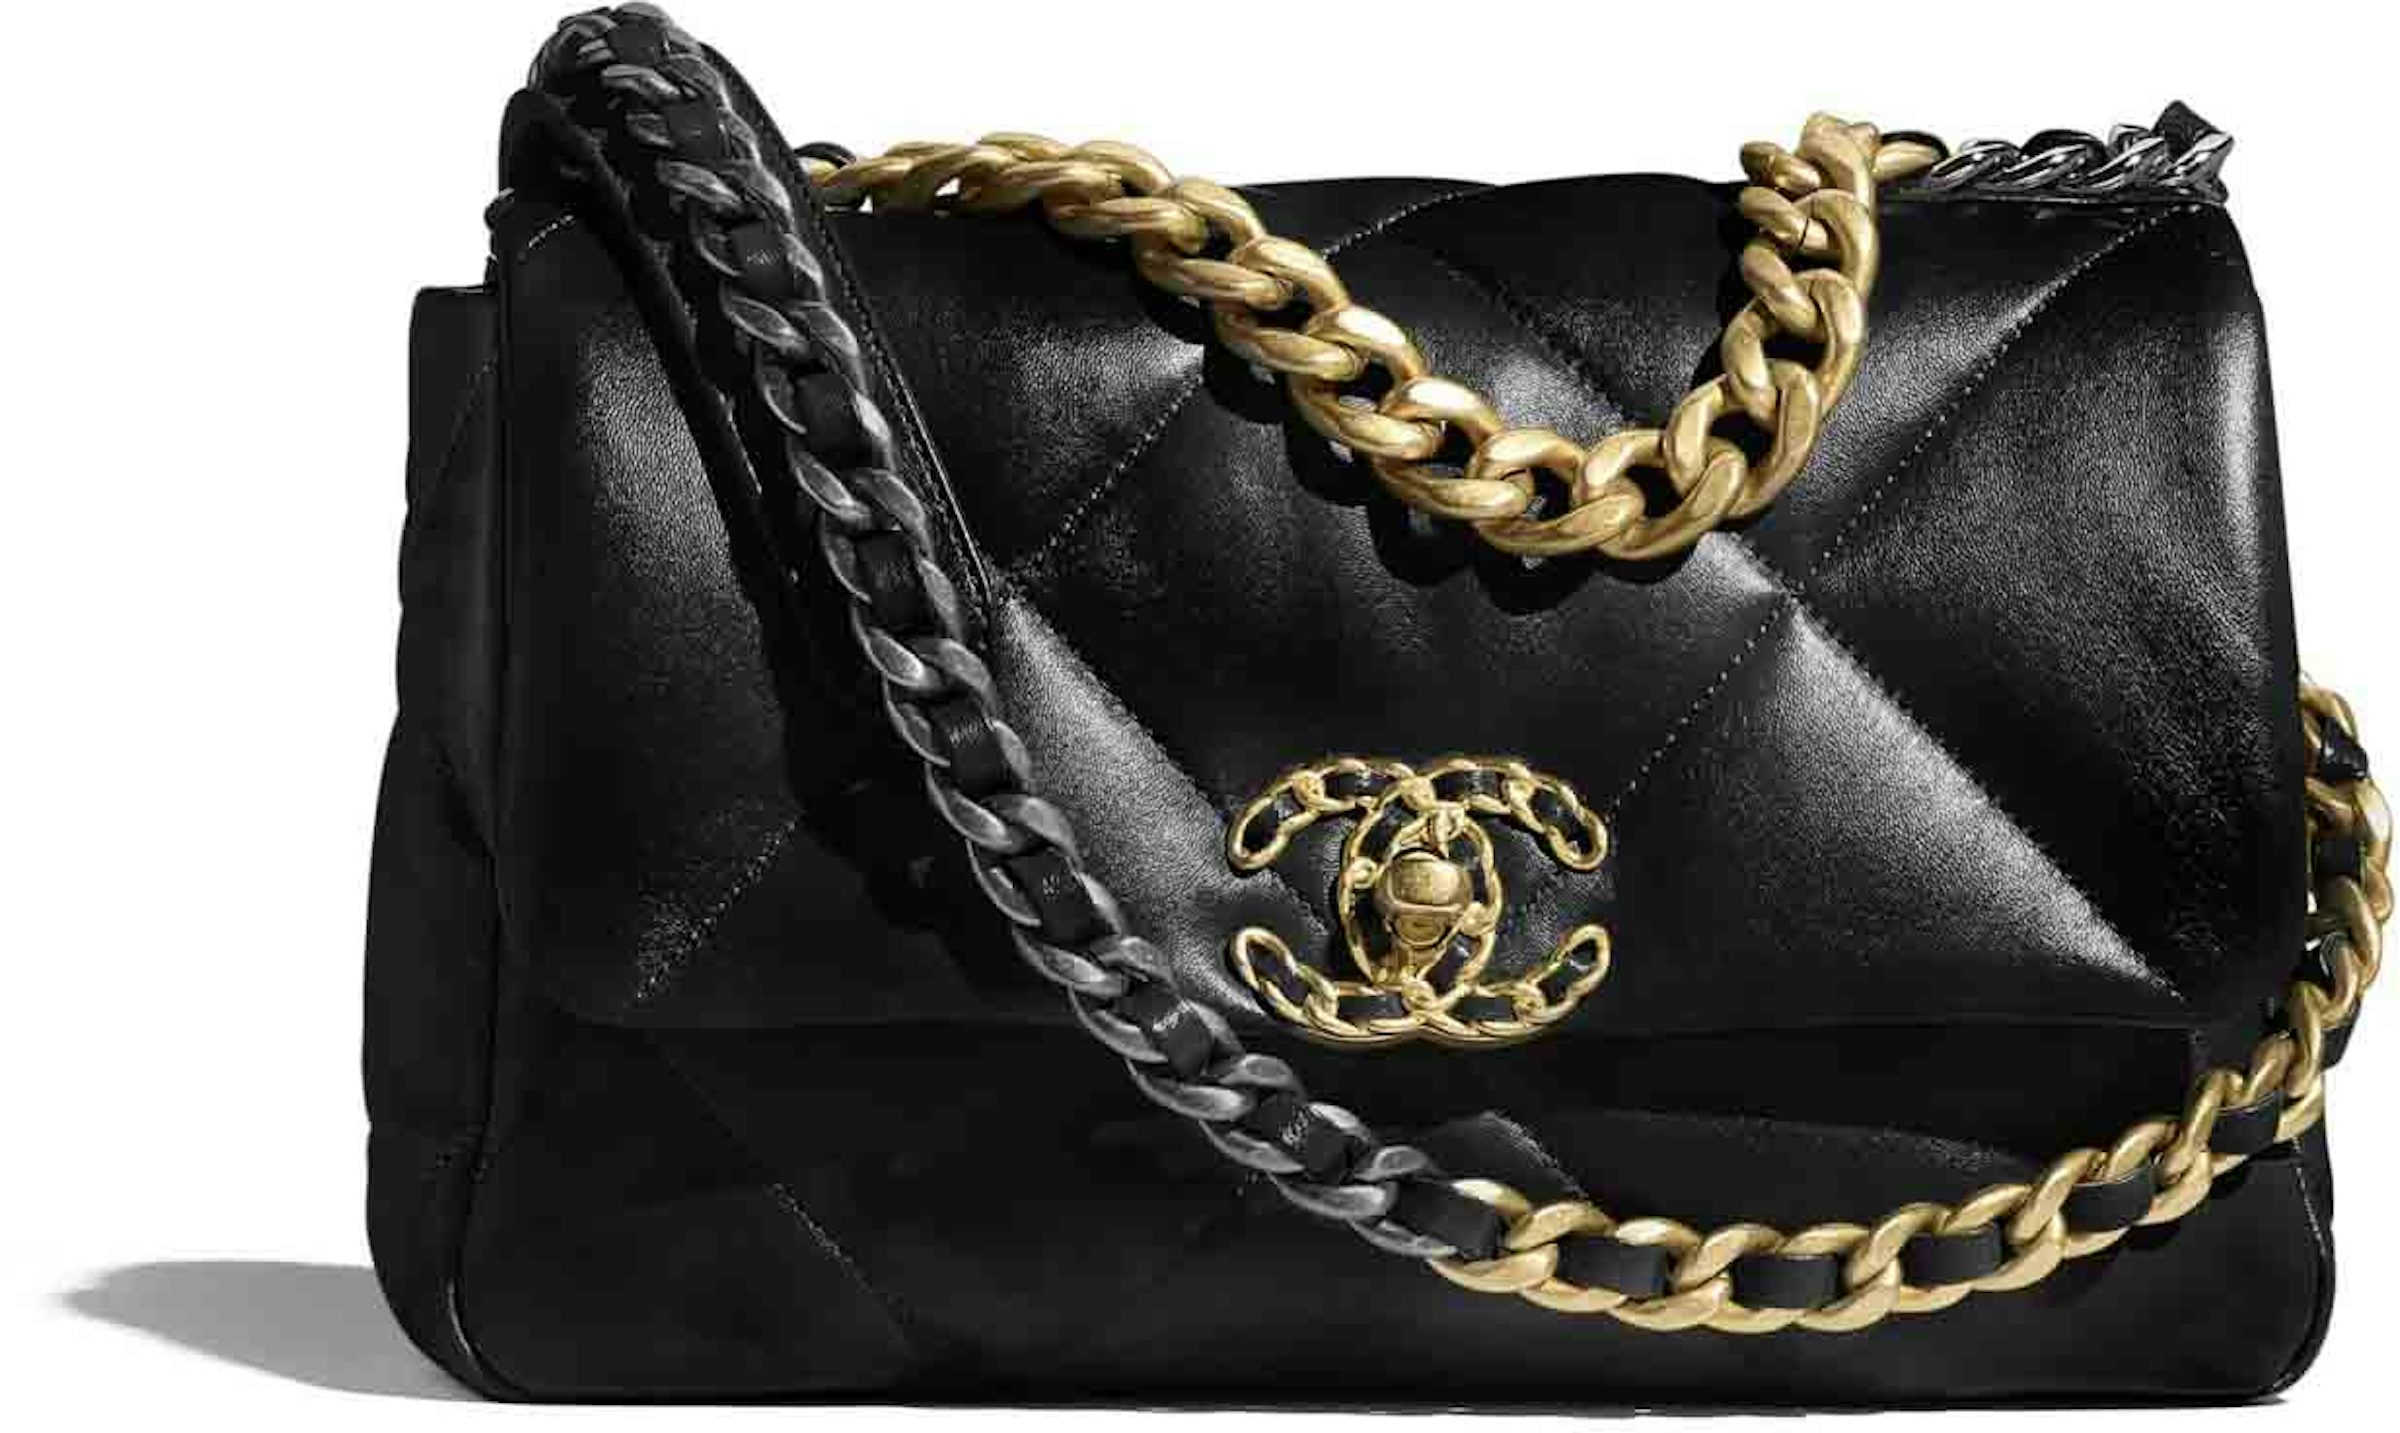 Chanel 19 Hobo Bag Black Aged Calfskin Brushed Gold Hardware